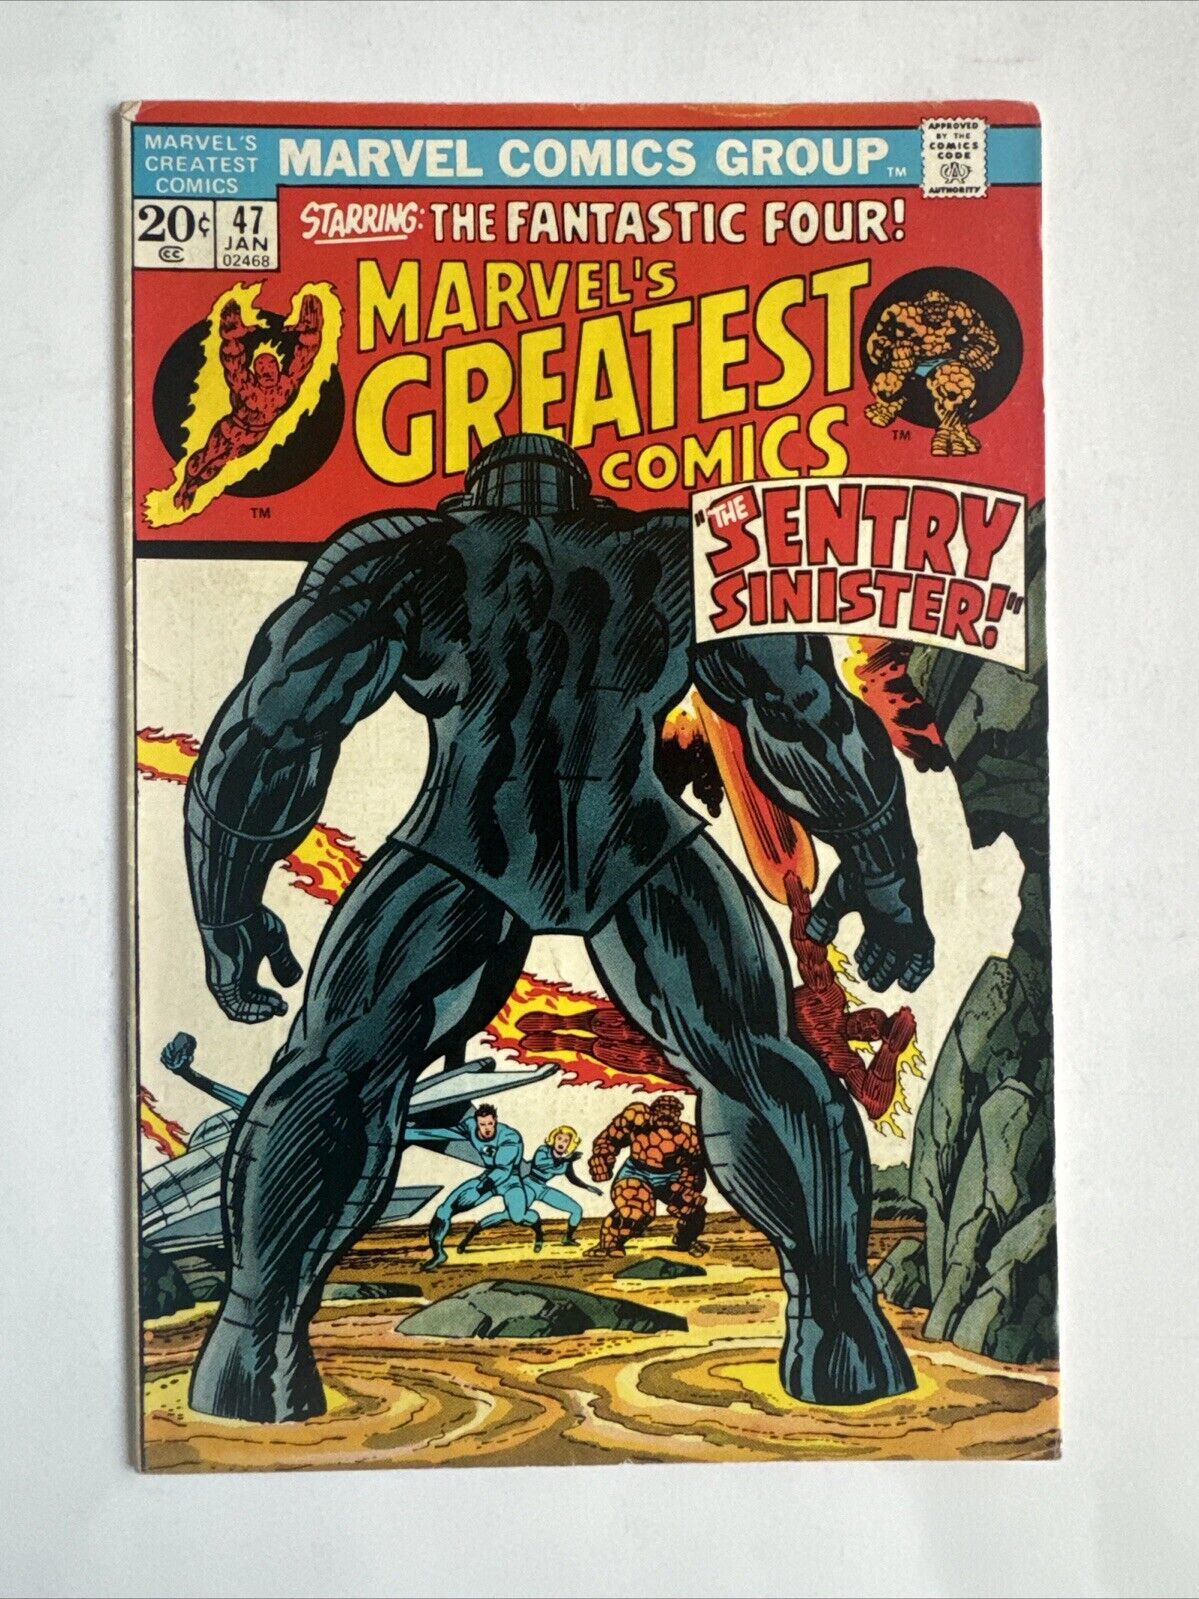 MARVEL\'s GREATEST COMICS #47 January 1974 Fantastic Four Vintage Marvel Comics